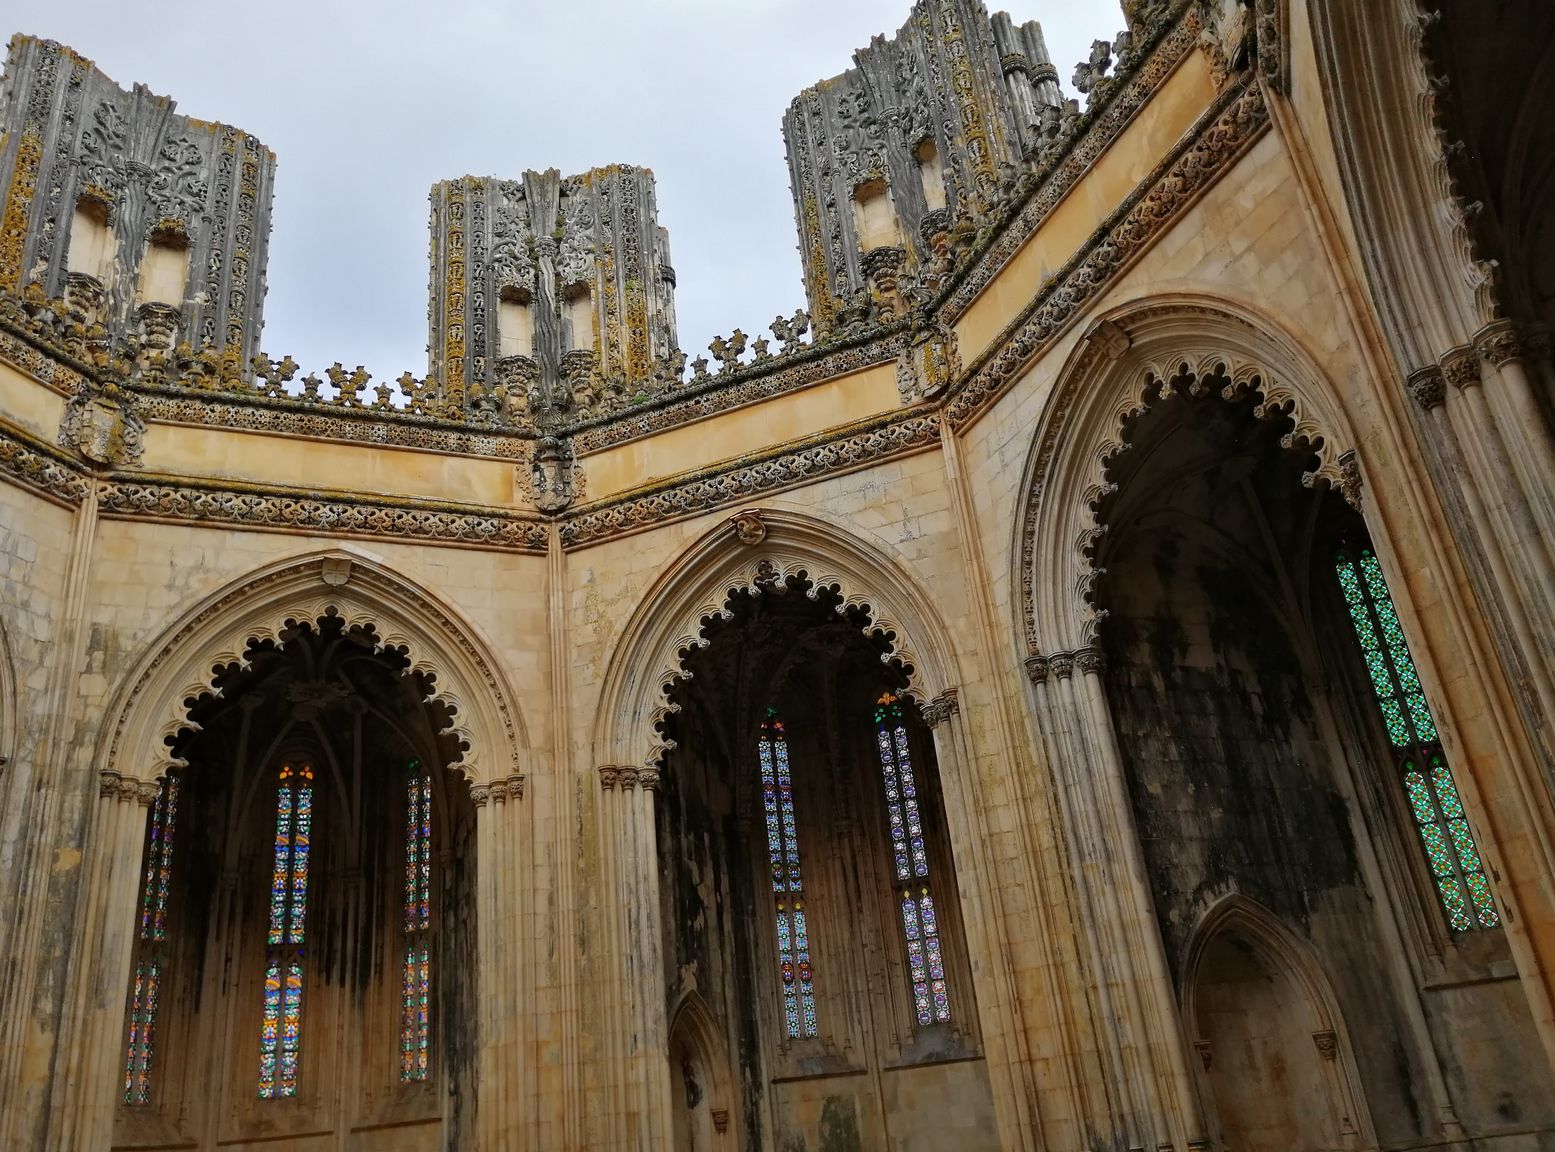 Les chapelles imparfaites à ciel ouvert.
Le chantier du monastère dura deux siècles sous le règne de 7 souverains portugais pour finalement ne jamais s’achever.